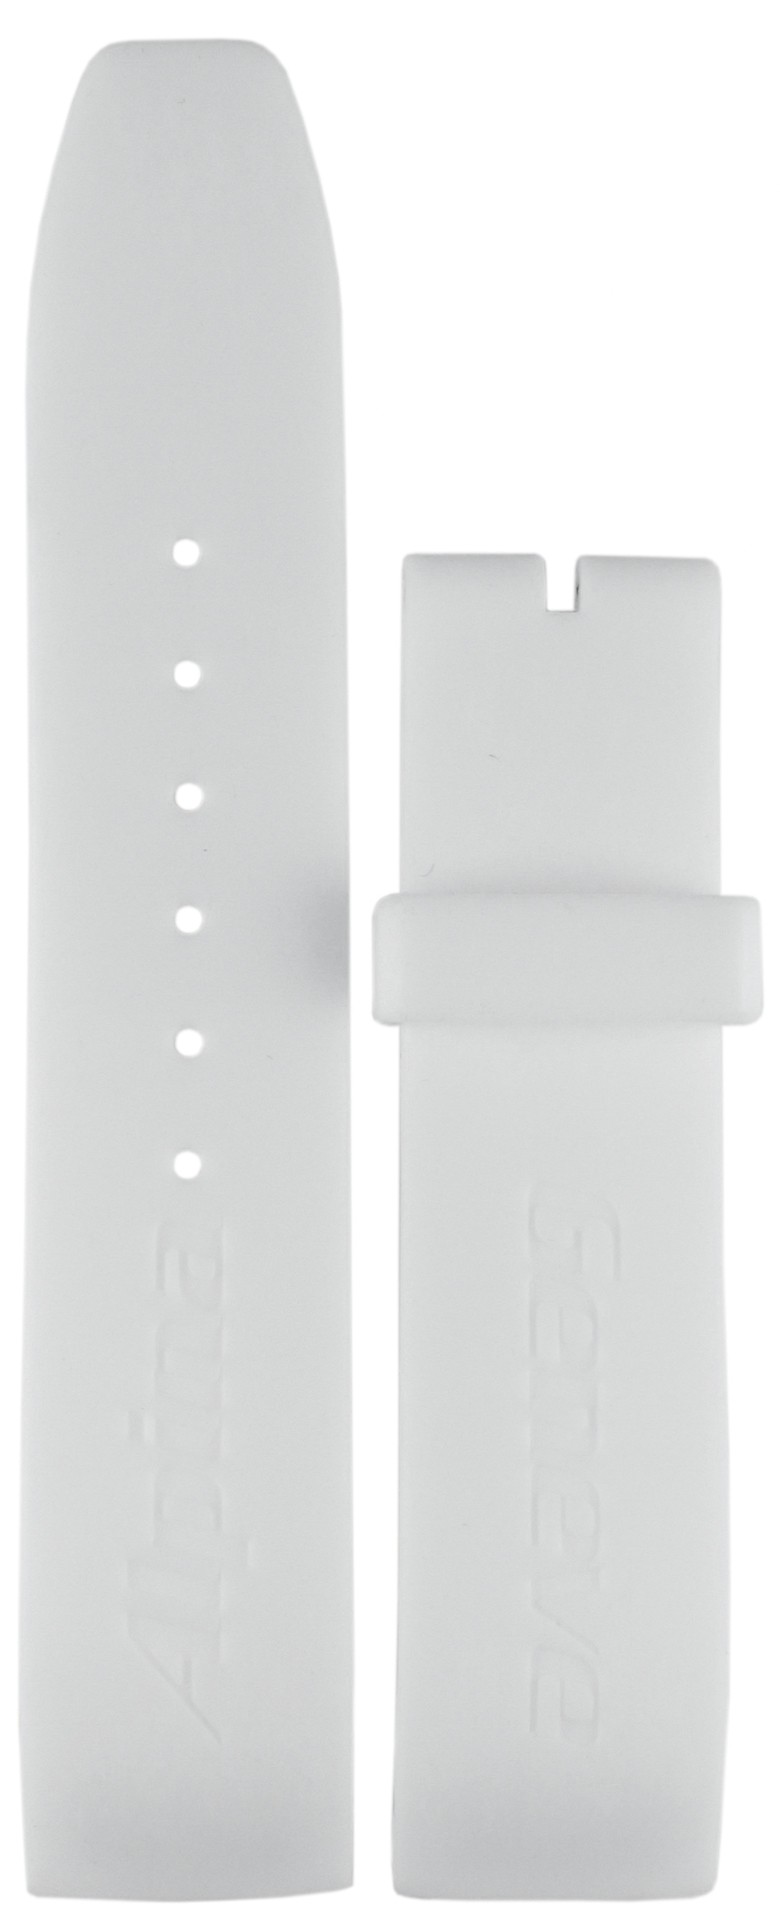 Ремешок для часов Alpina ALR-3VW (цвет: Белый, материал: Каучук) - купить в интернет-магазине Watchband.ru.